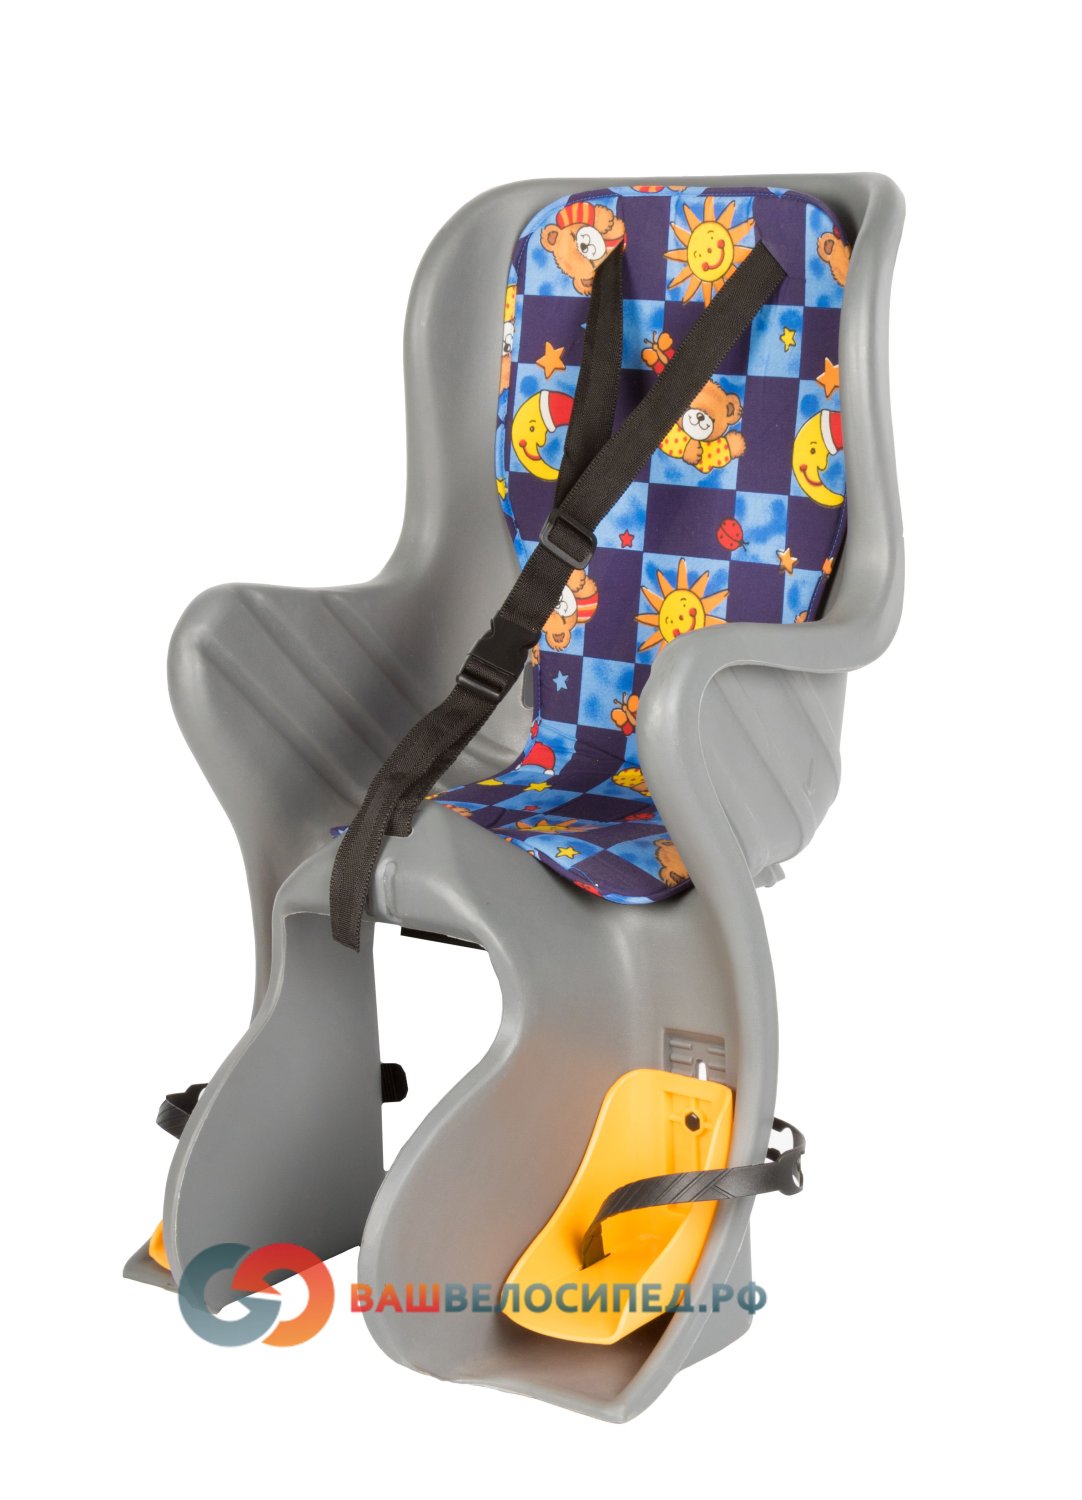 Детское велокресло на багажник SF-928L серое до 7 лет/22кг детское велокресло hamax 2017 siesta w carrier adapter на багажник серо красный до 22 кг 552505